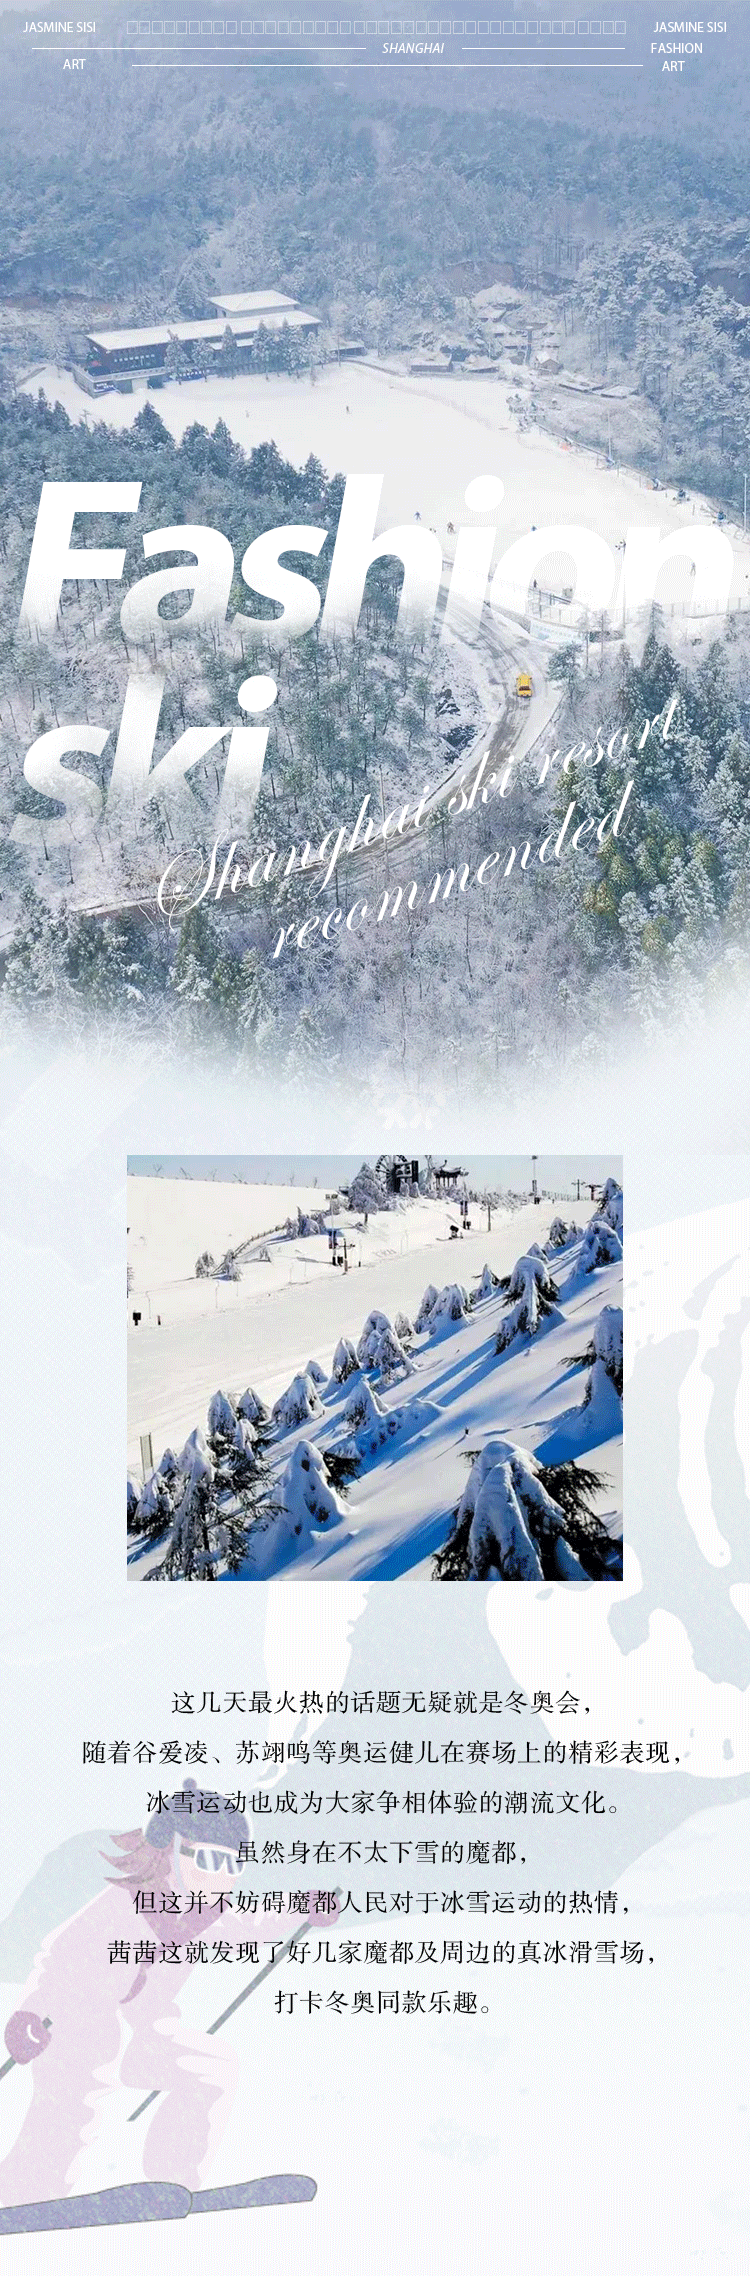 安吉温泉滑雪_安吉滑雪场怎么样_安吉滑雪旅游攻略